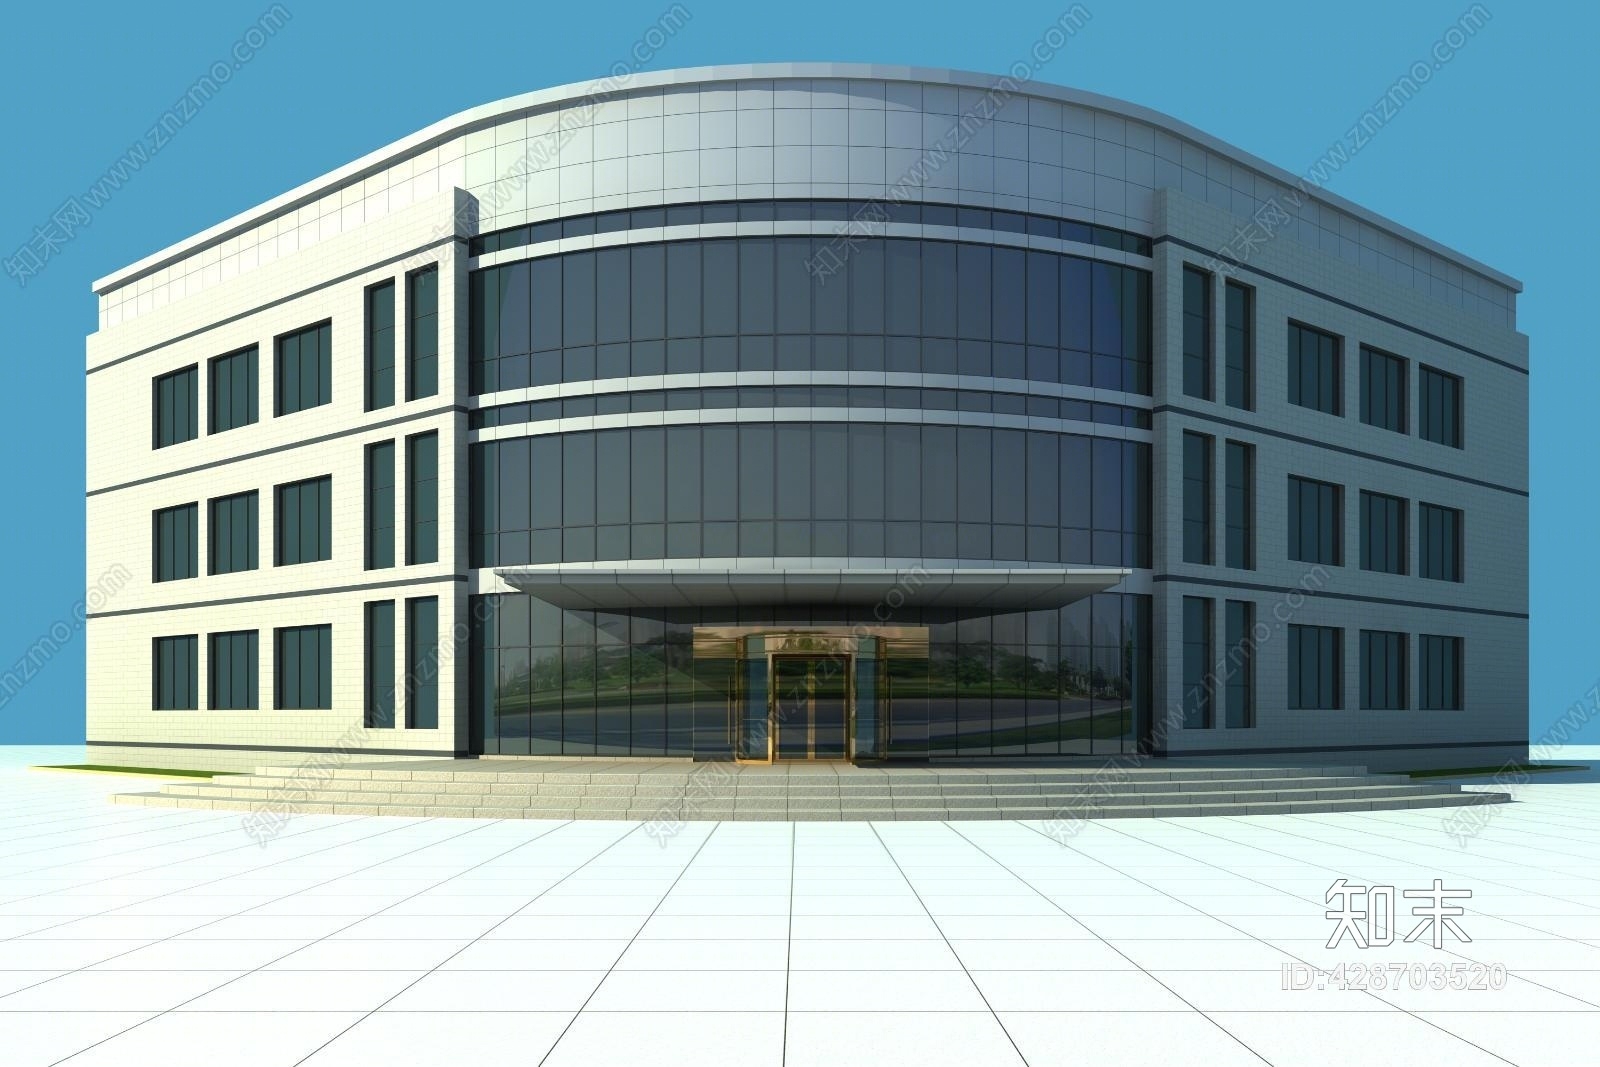 现代室外办公楼建筑3d模型下载【id:428703520】